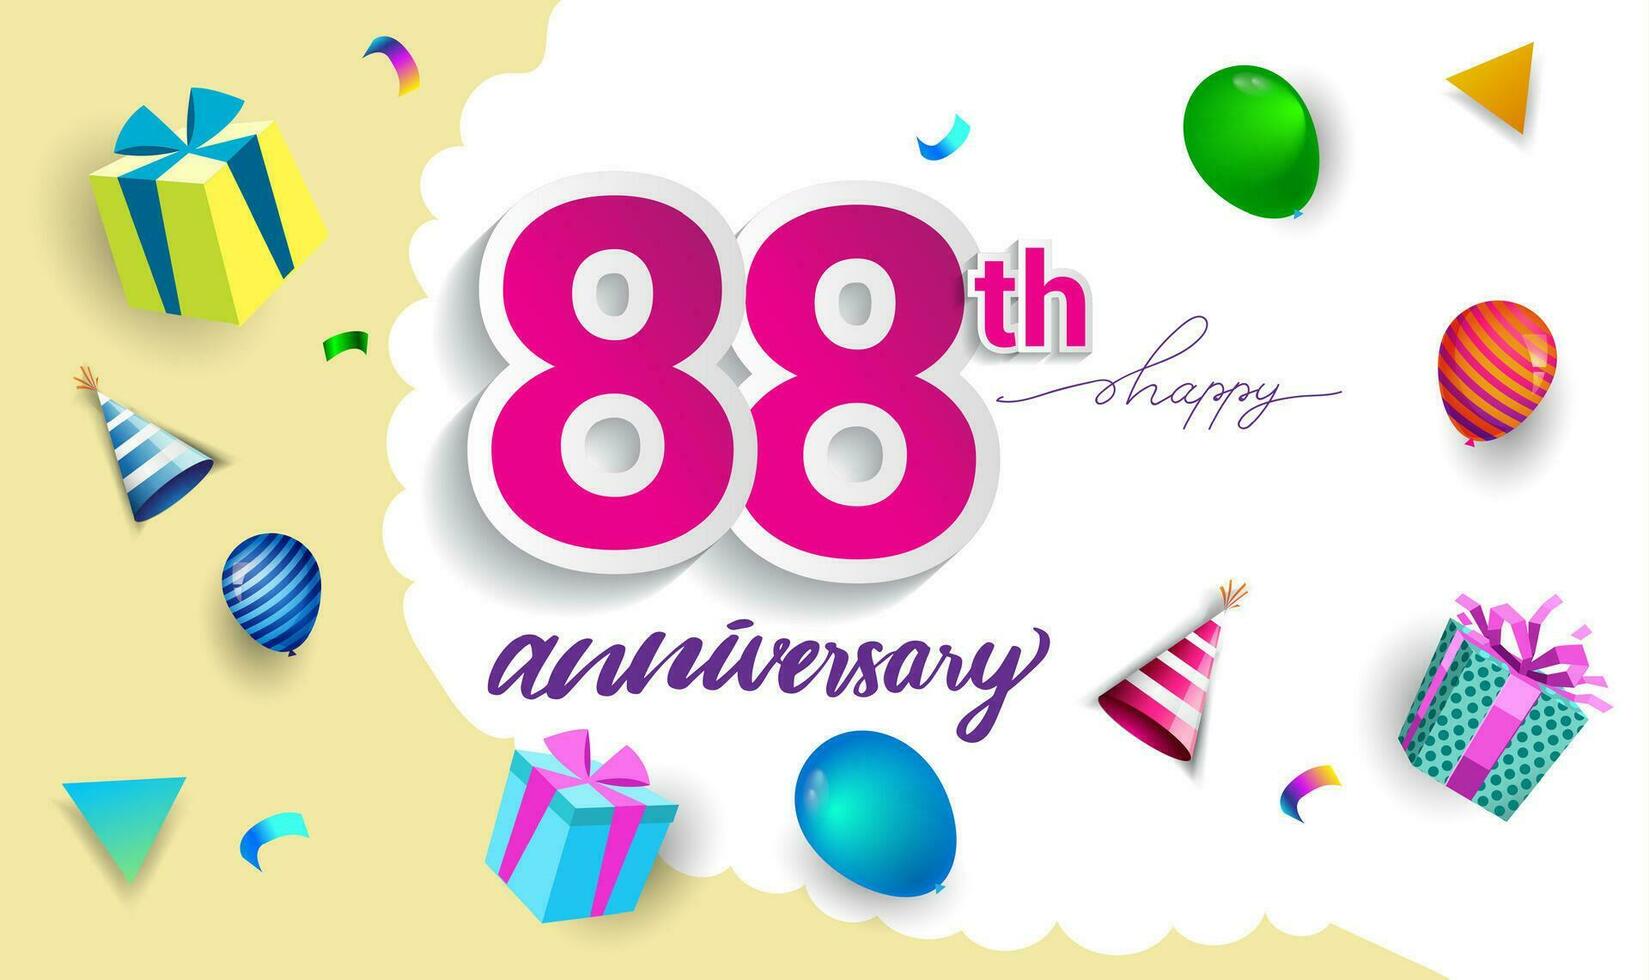 88º anos aniversário celebração projeto, com presente caixa e balões, fita, colorida vetor modelo elementos para seu aniversário a comemorar Festa.